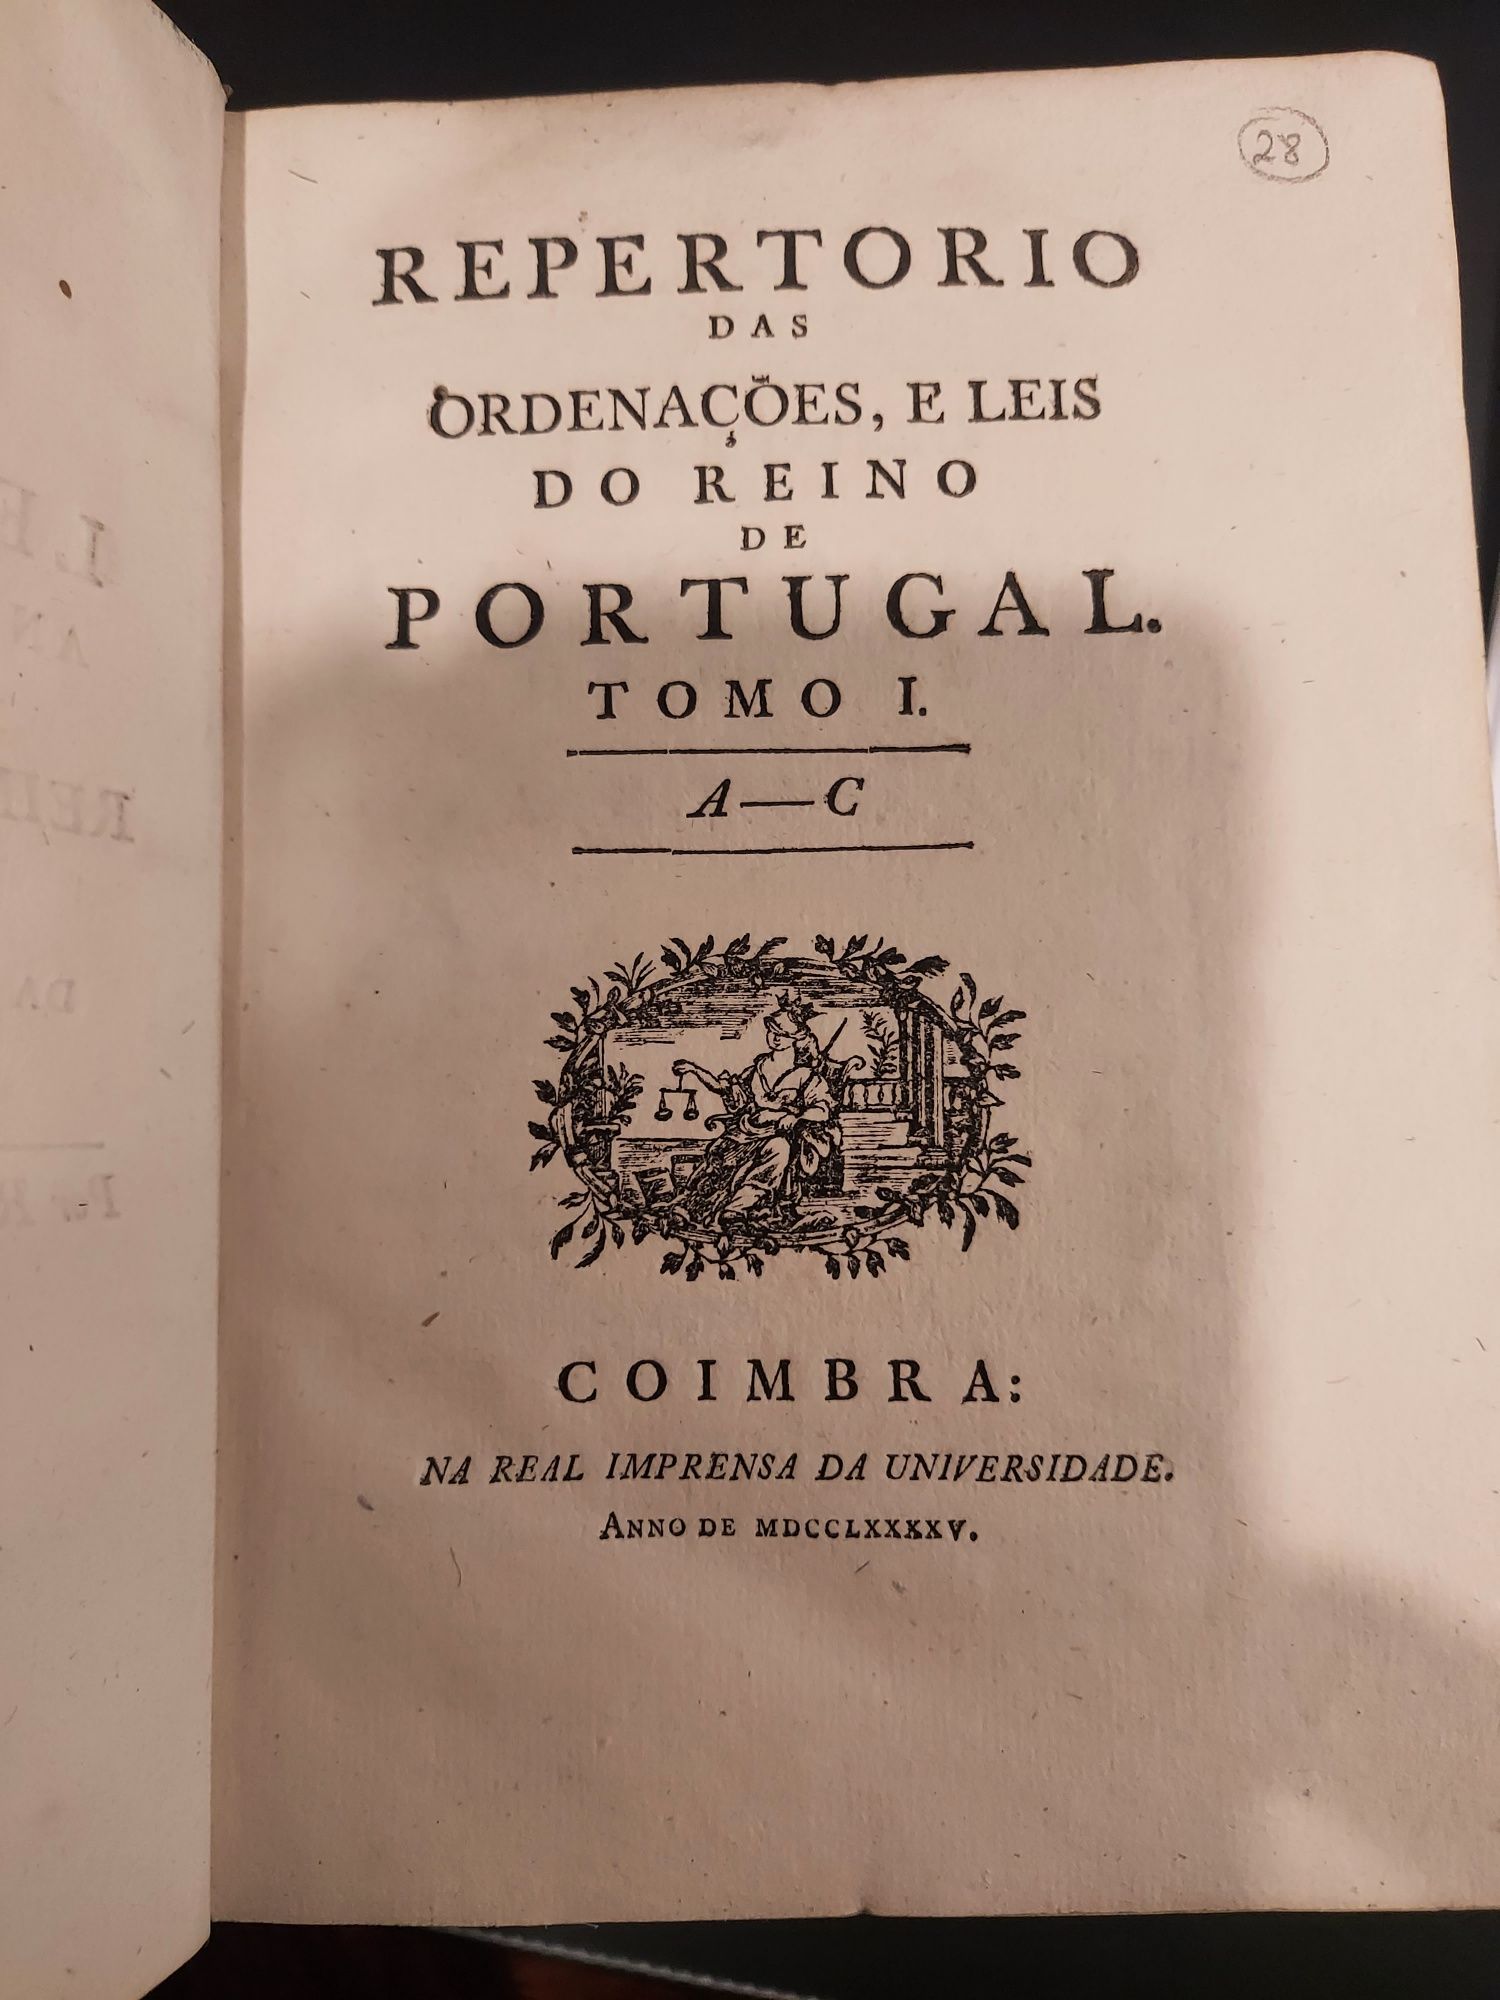 Repertorio das Ordenações e Leis do Reino de Portugal, 4 Tomos, 1795